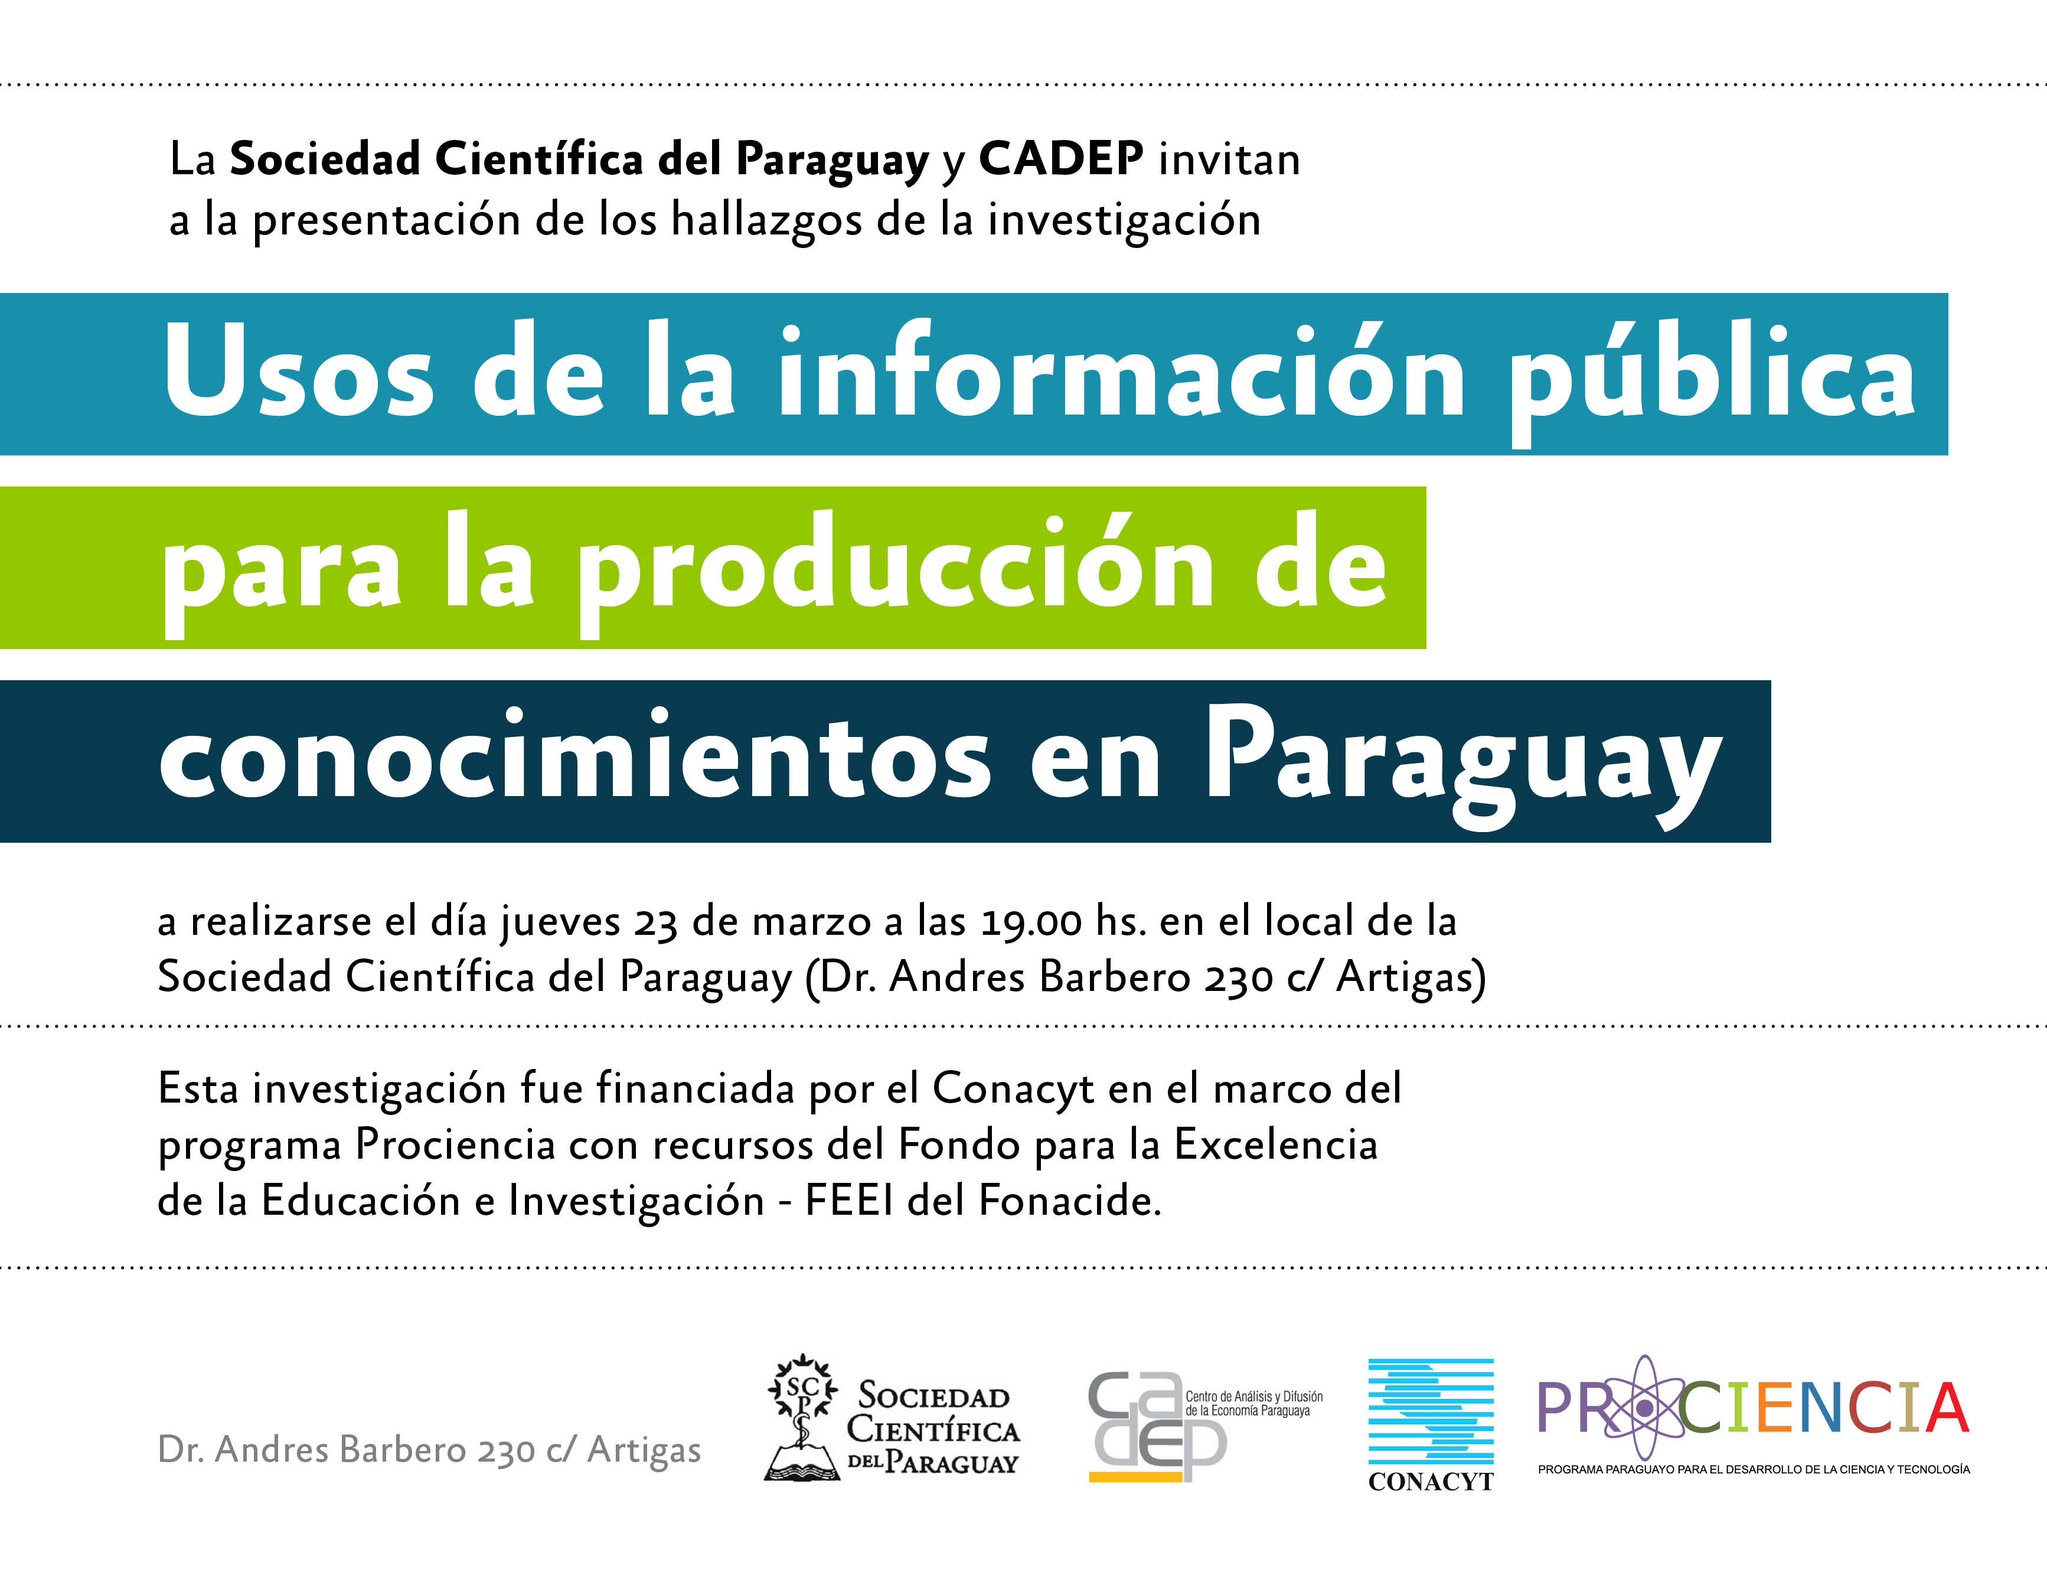 Presentación de los hallazgos de la investigación usos de información pública - Paraguay